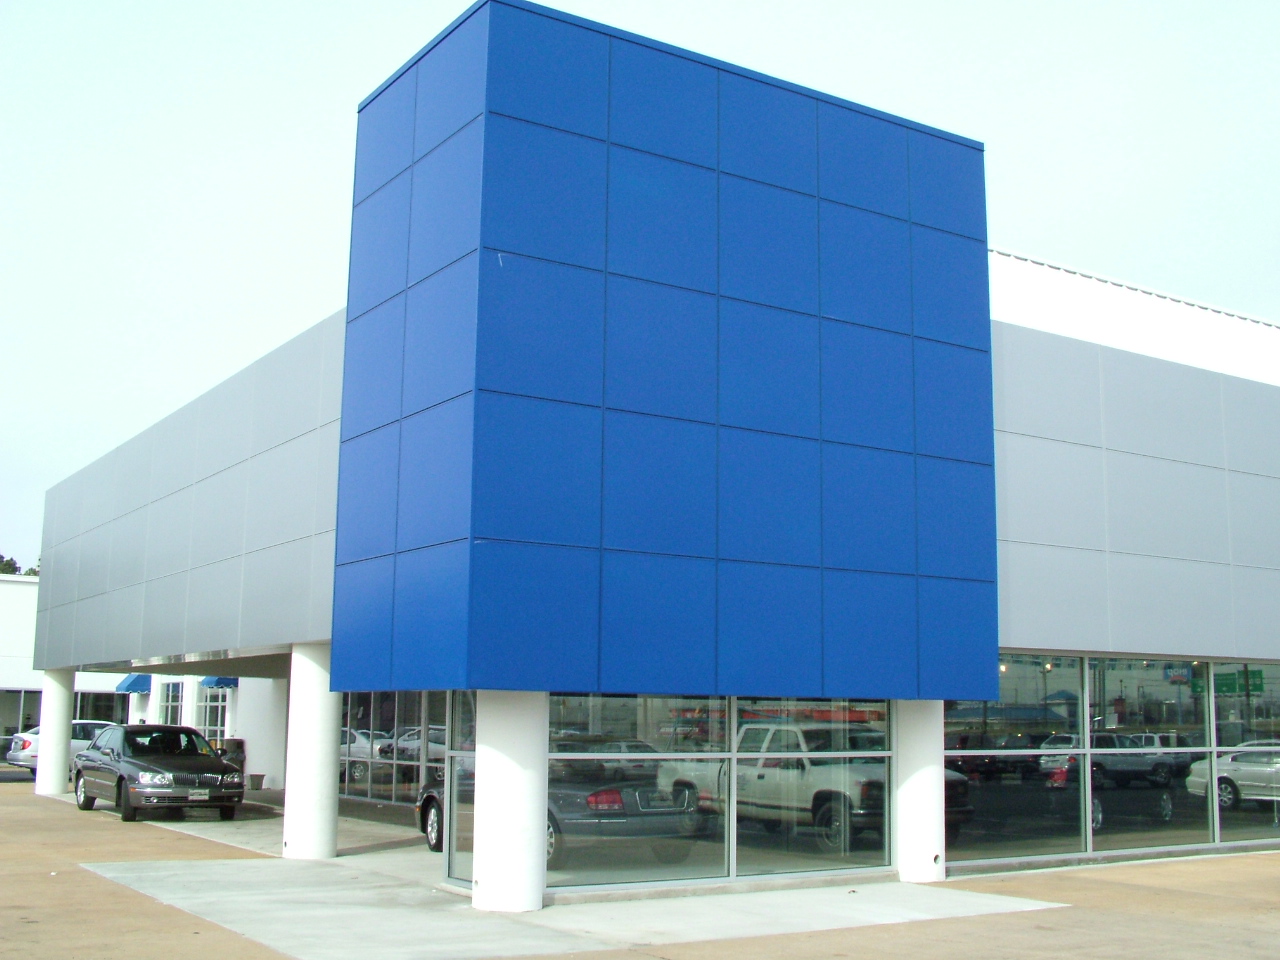 Hyundai Dealership reveal moldings